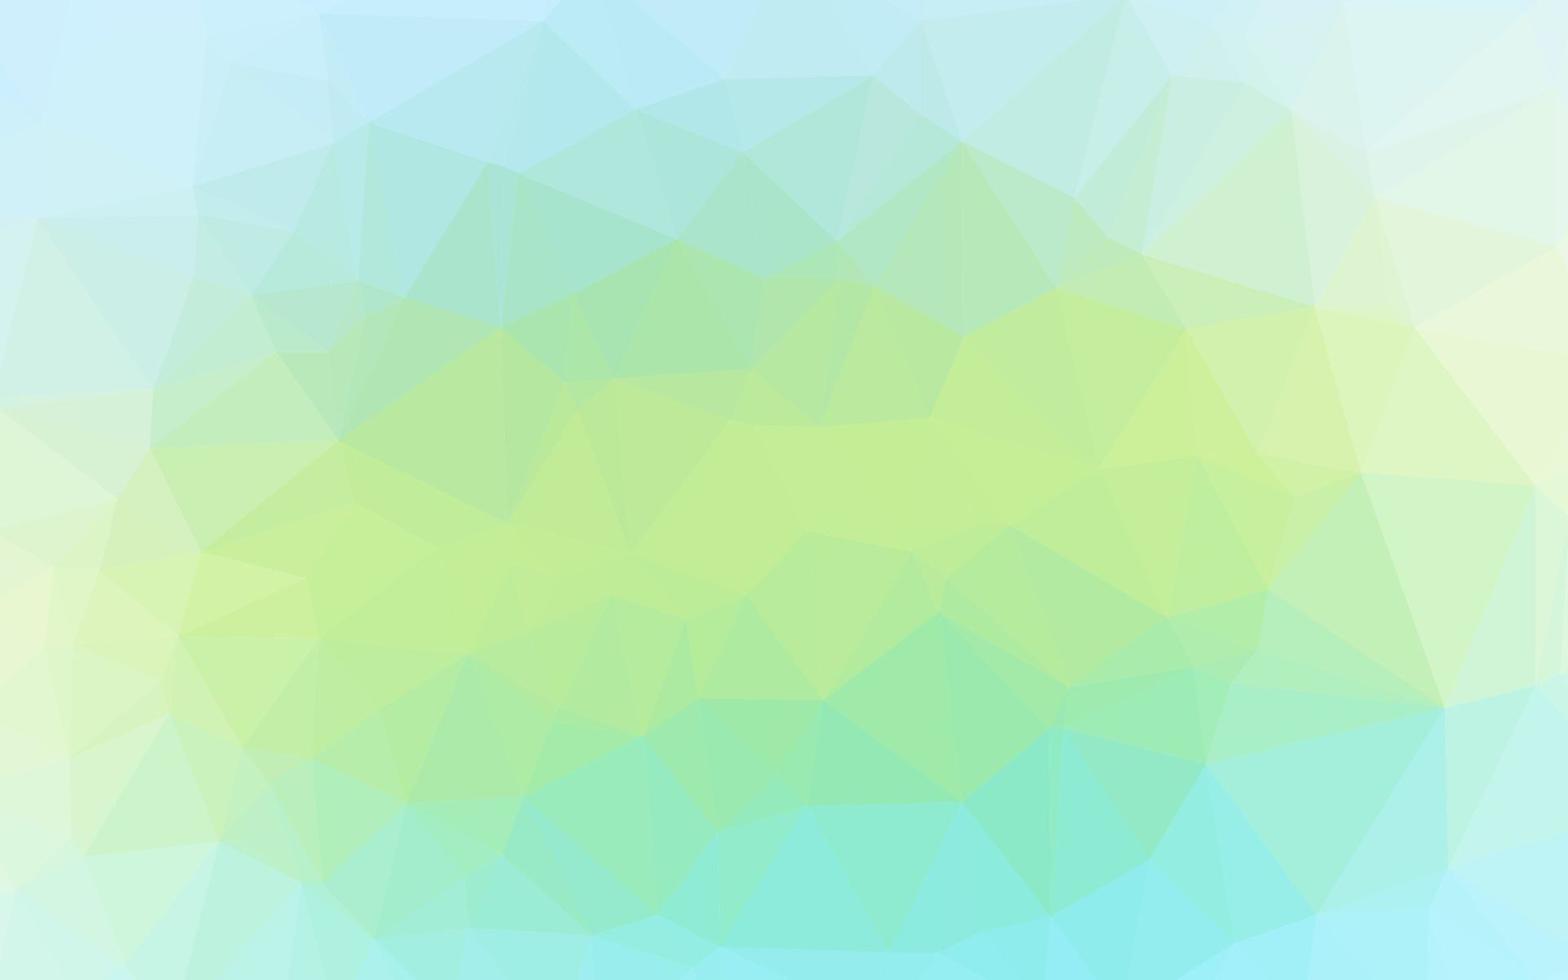 motif polygonal de vecteur vert clair, jaune.